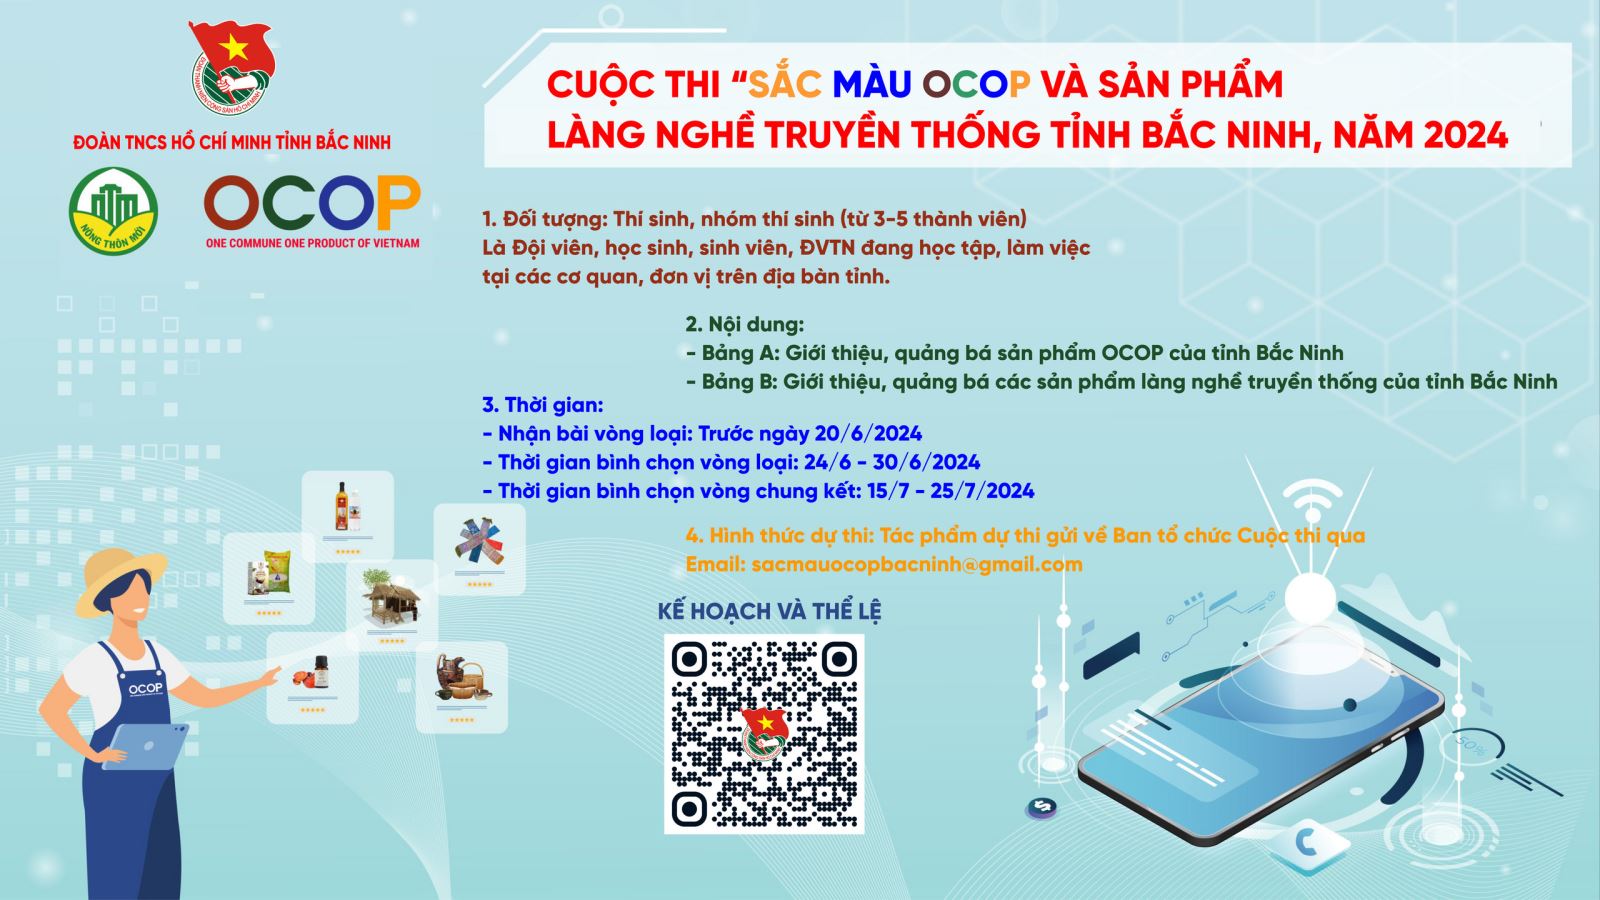 Phát động Cuộc thi "Sắc màu OCOP và sản phẩm làng nghề truyền thống tỉnh Bắc Ninh" năm 2024